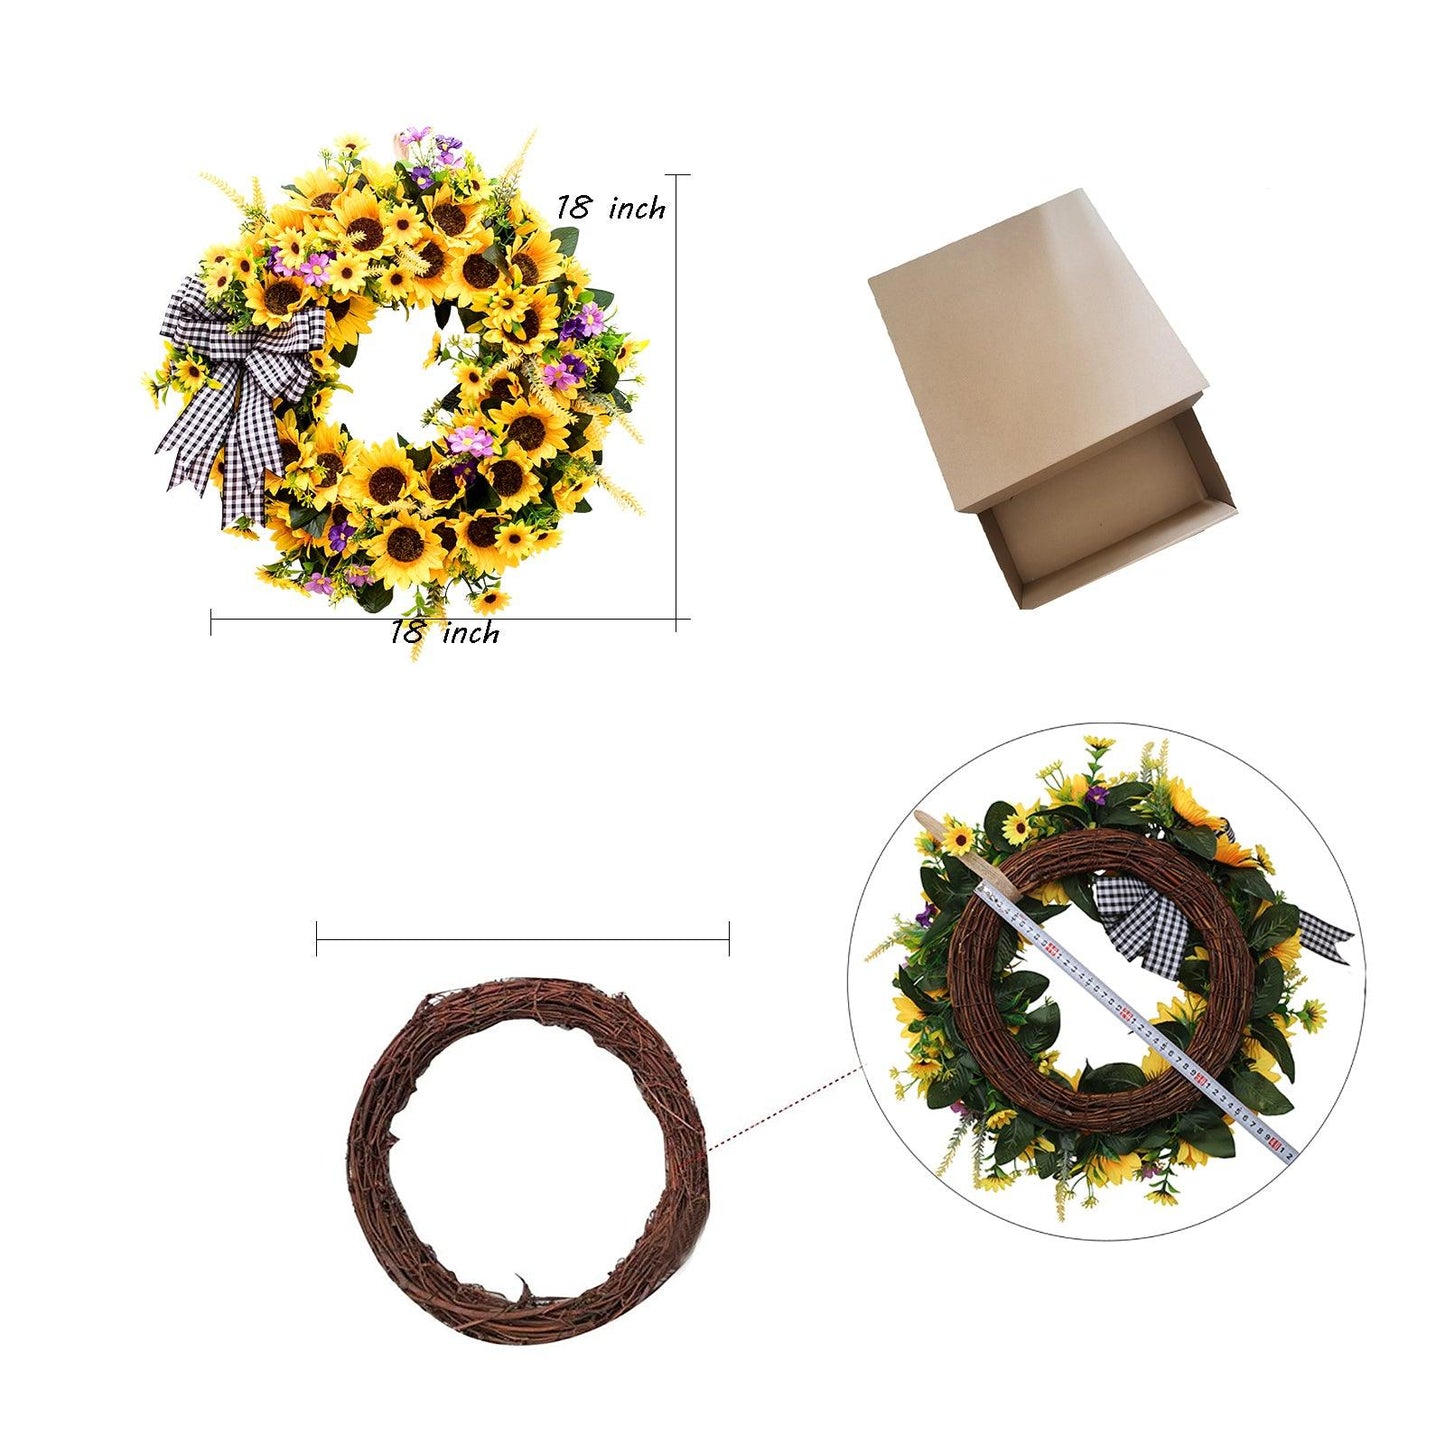 18" Handmade Artificial Sunflower Wreath for Front Door